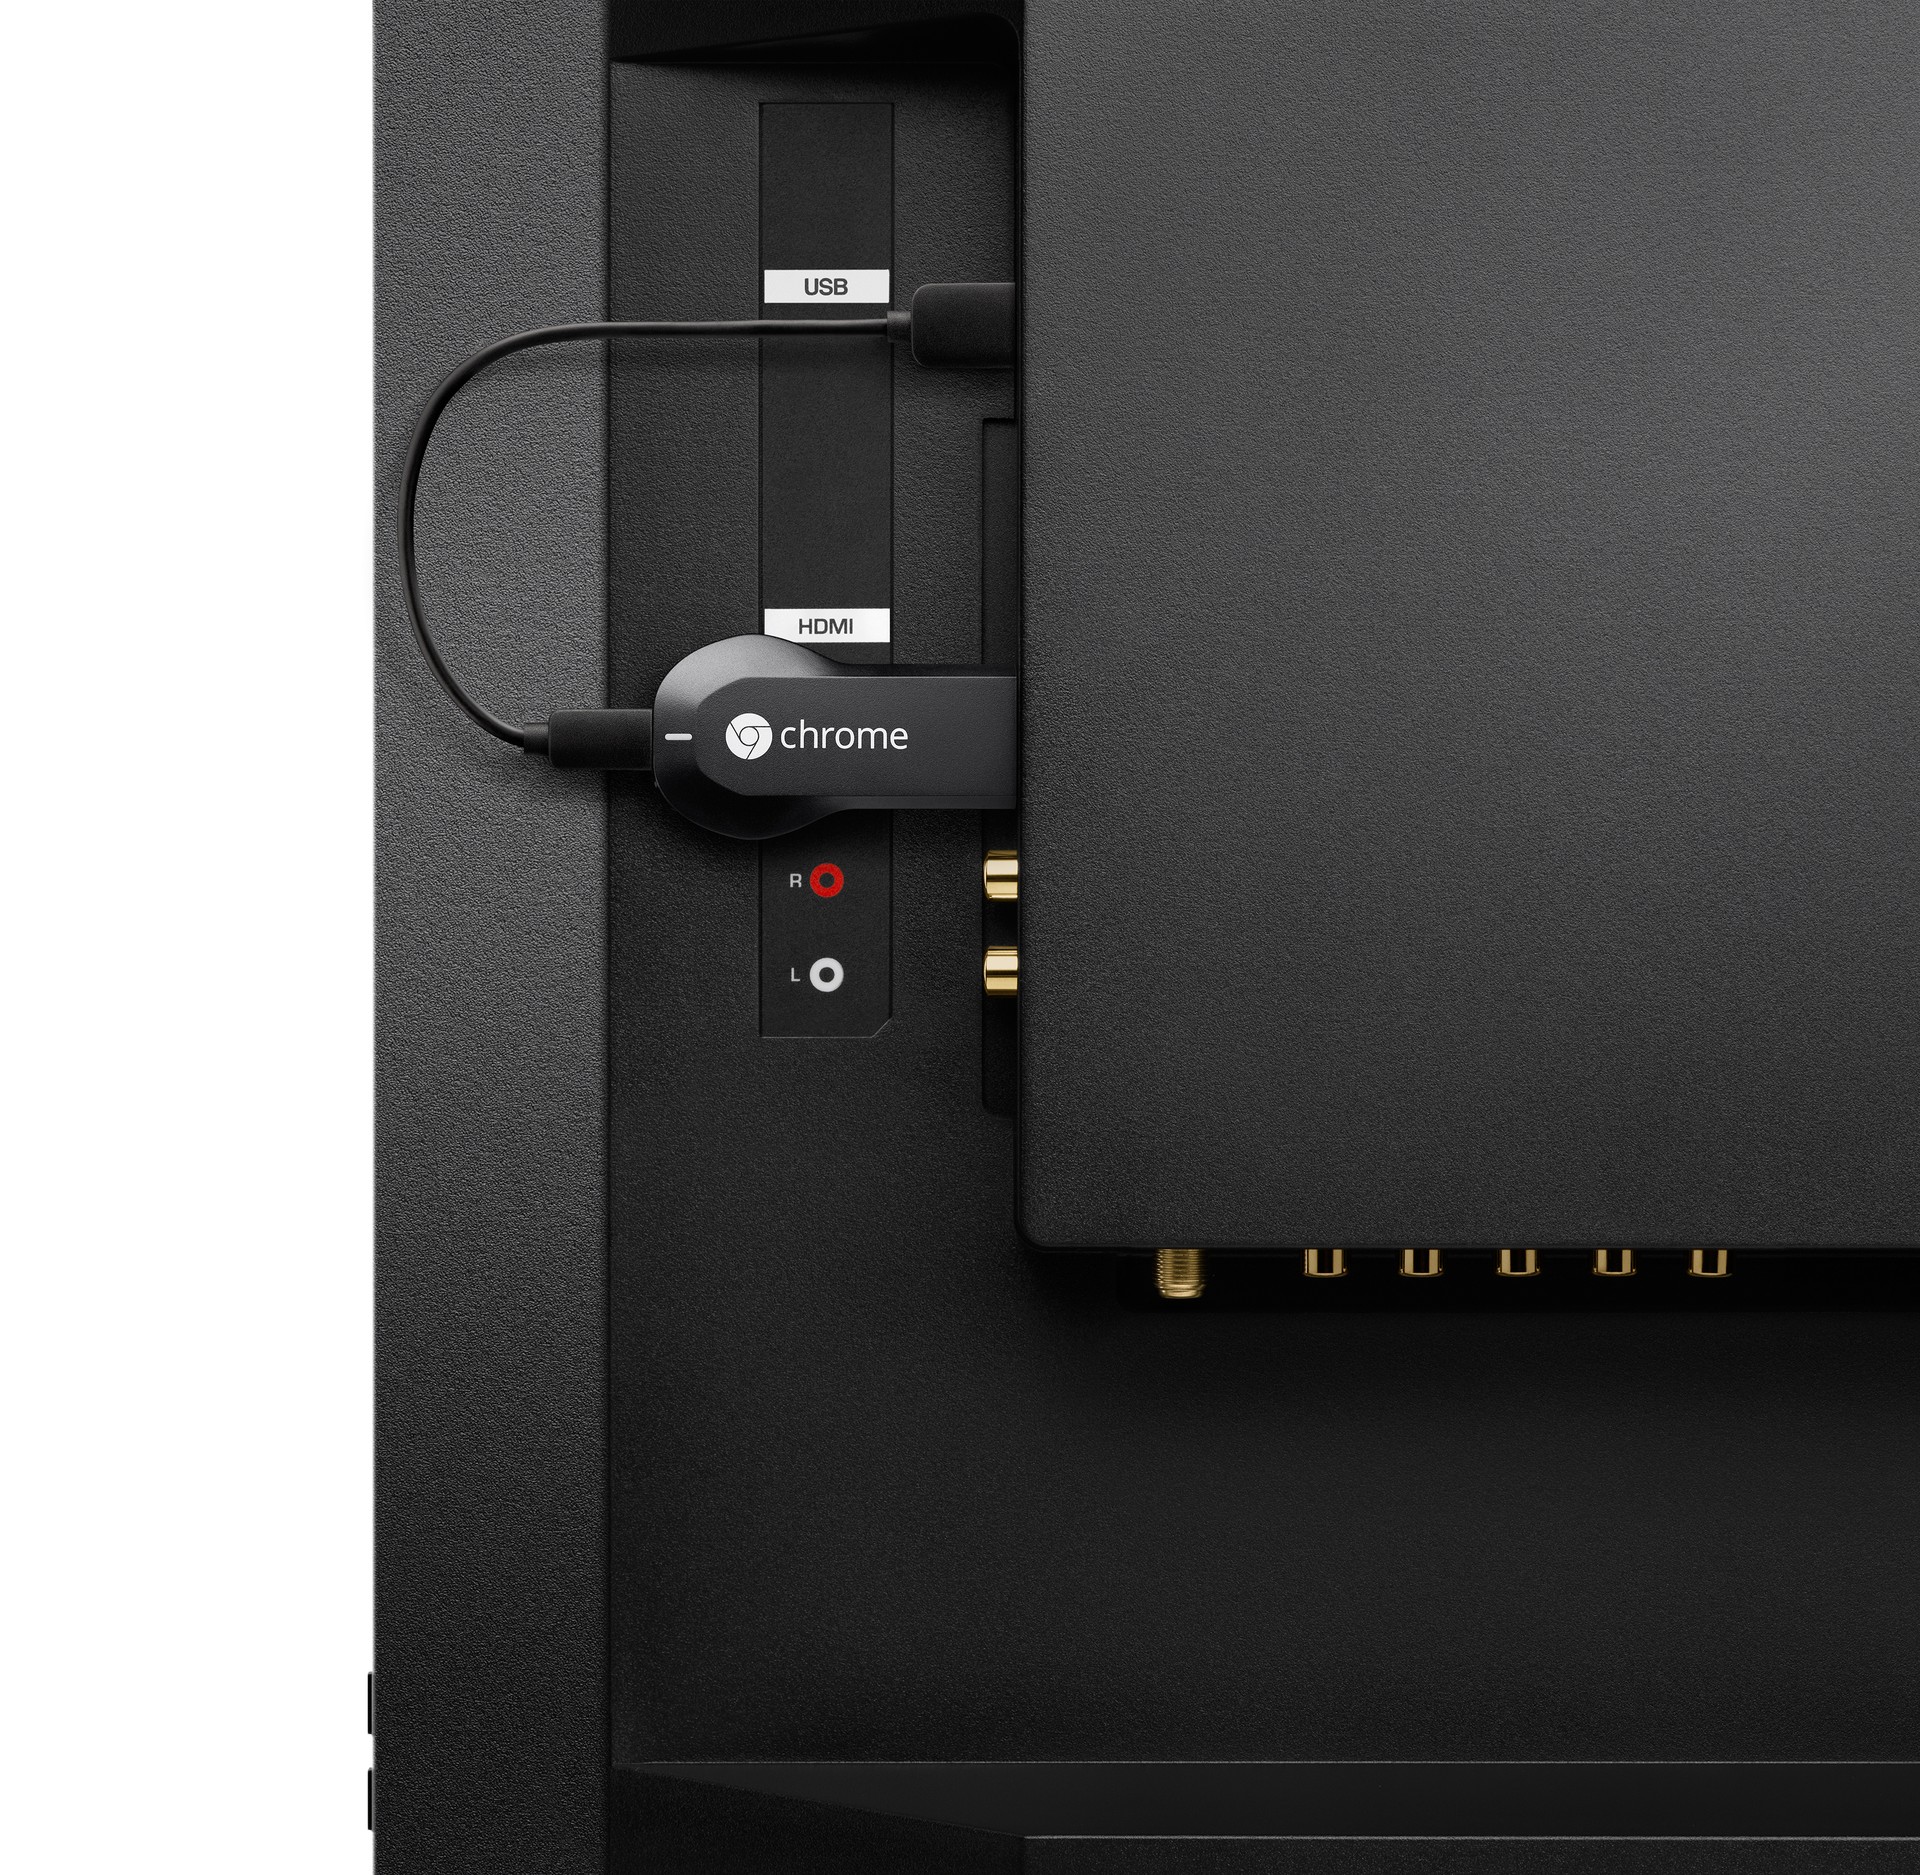 O Chromecast é plugado na entrada HDMI da TV. Equipado com um USB para carregar a bateria, a maioria dos usuários prefere usar a entrada USB da própria TV para mantê-lo ativo (Foto: divulgação)